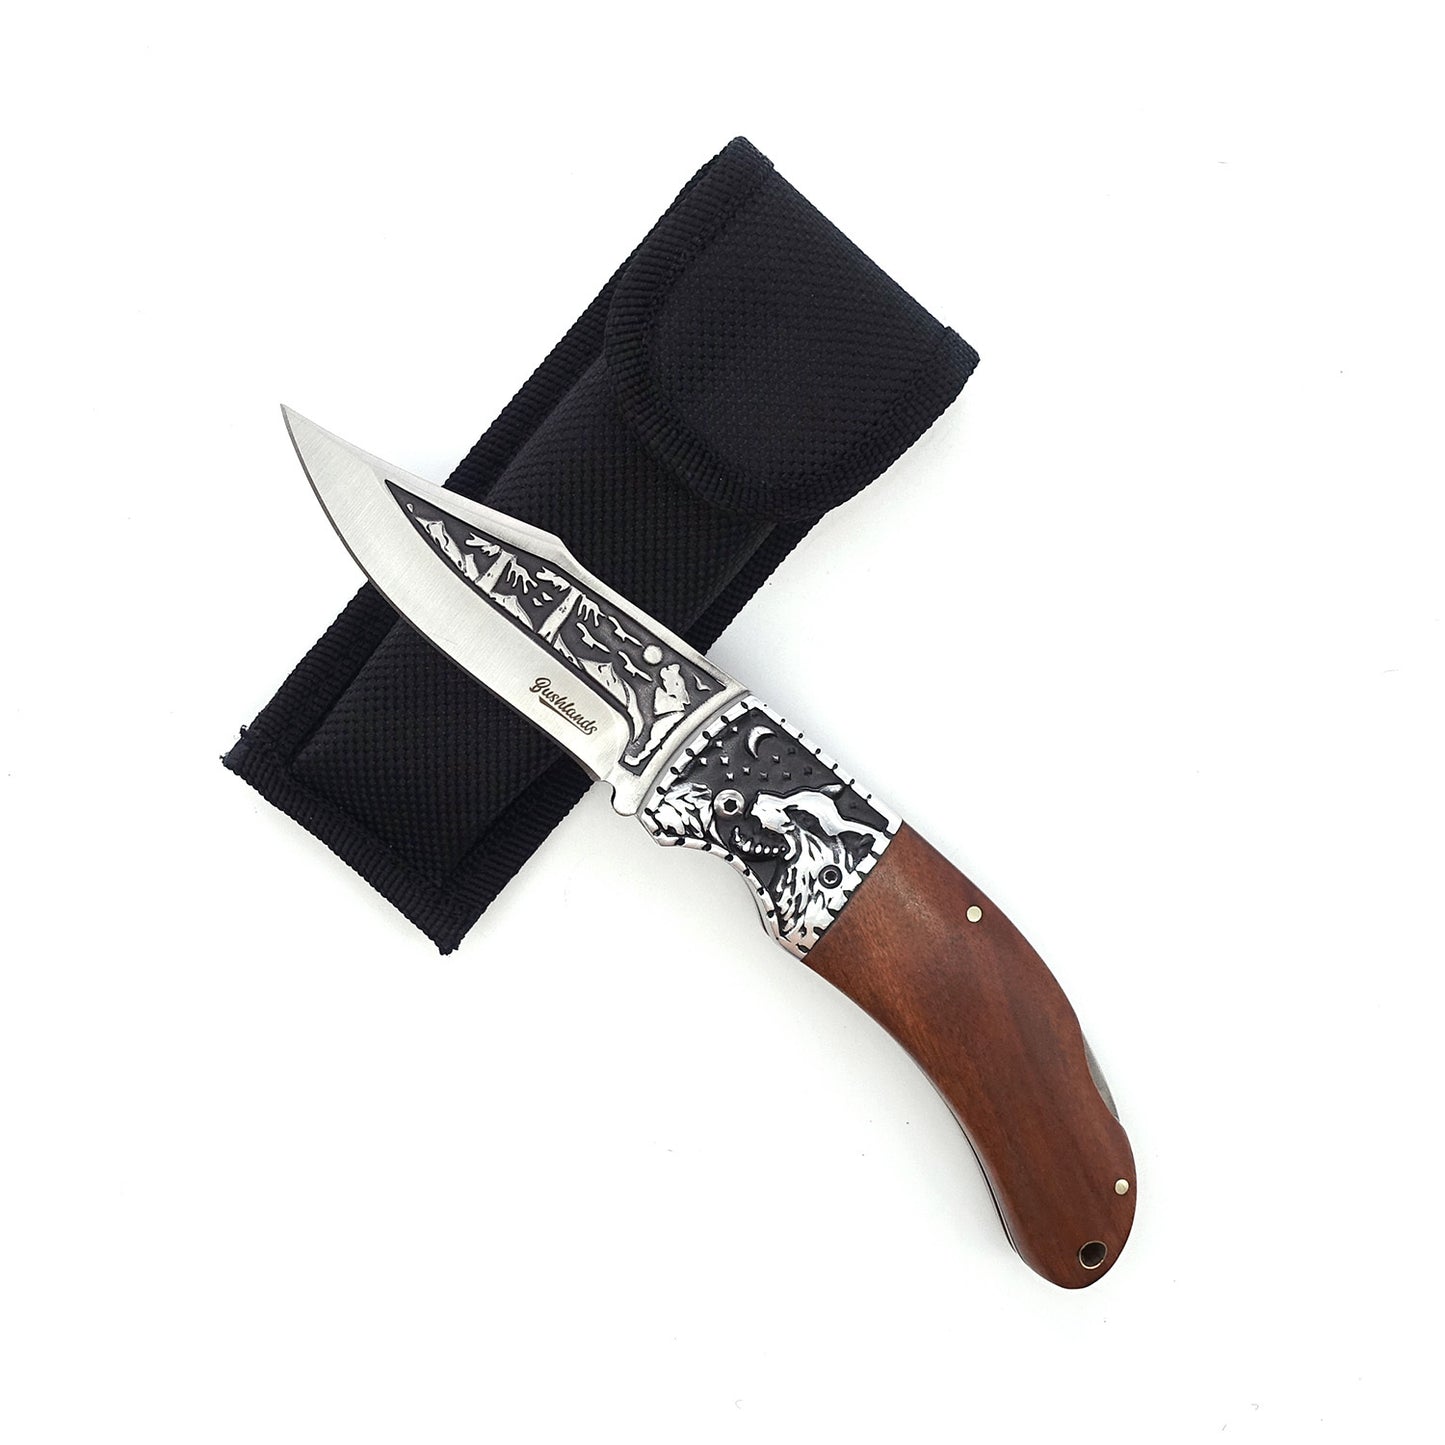 Bushlands Bushlands Tracker Clip Point Blade Folding Pocket Knife - 4.7 Inch #fb3032 Black